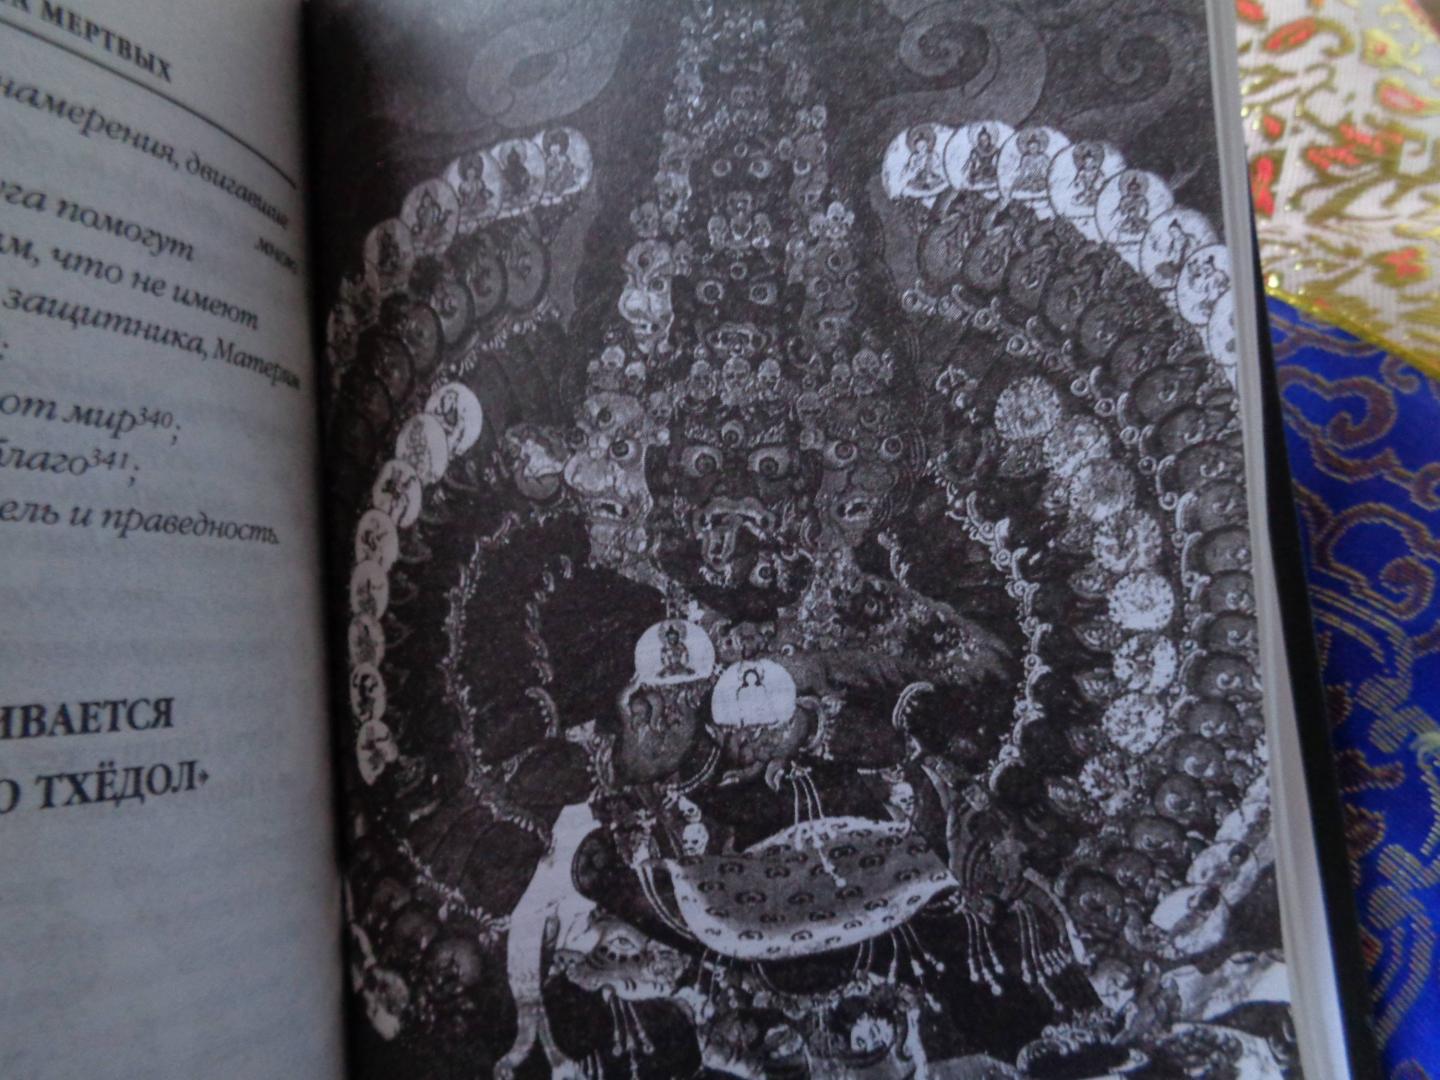 Иллюстрация 34 из 41 для Бардо Тхёдол. Тибетская книга мертвых | Лабиринт - книги. Источник: Лабиринт